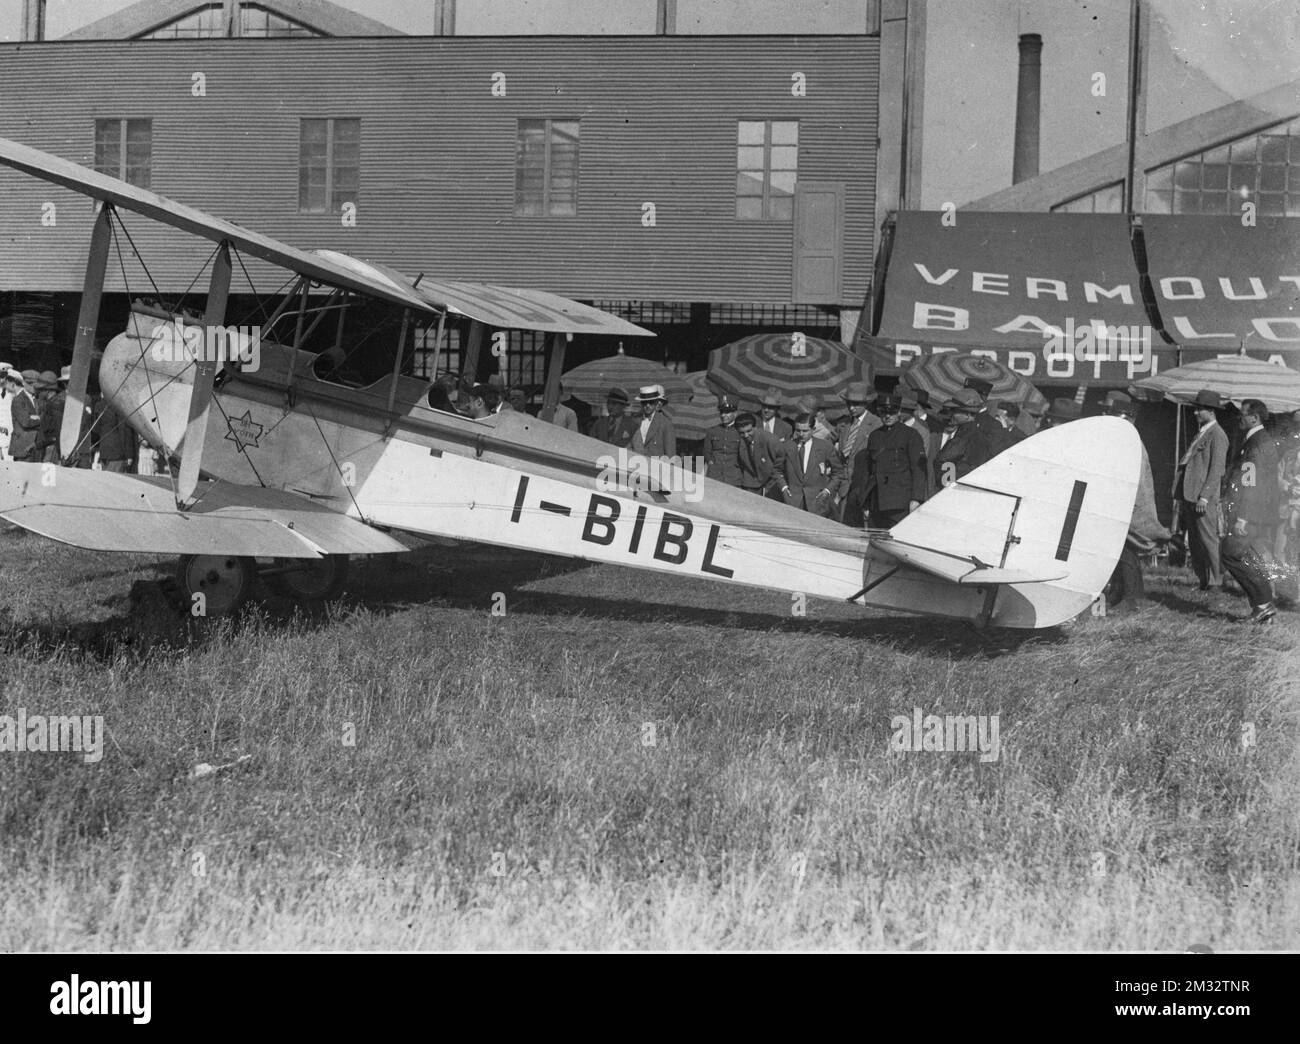 Aeroplani - Havilland DH.50 un monomotore biplano da trasporto passeggeri prodotto dall'azienda britannica de Havilland Aircraft Company negli anni venti. Stock Photo